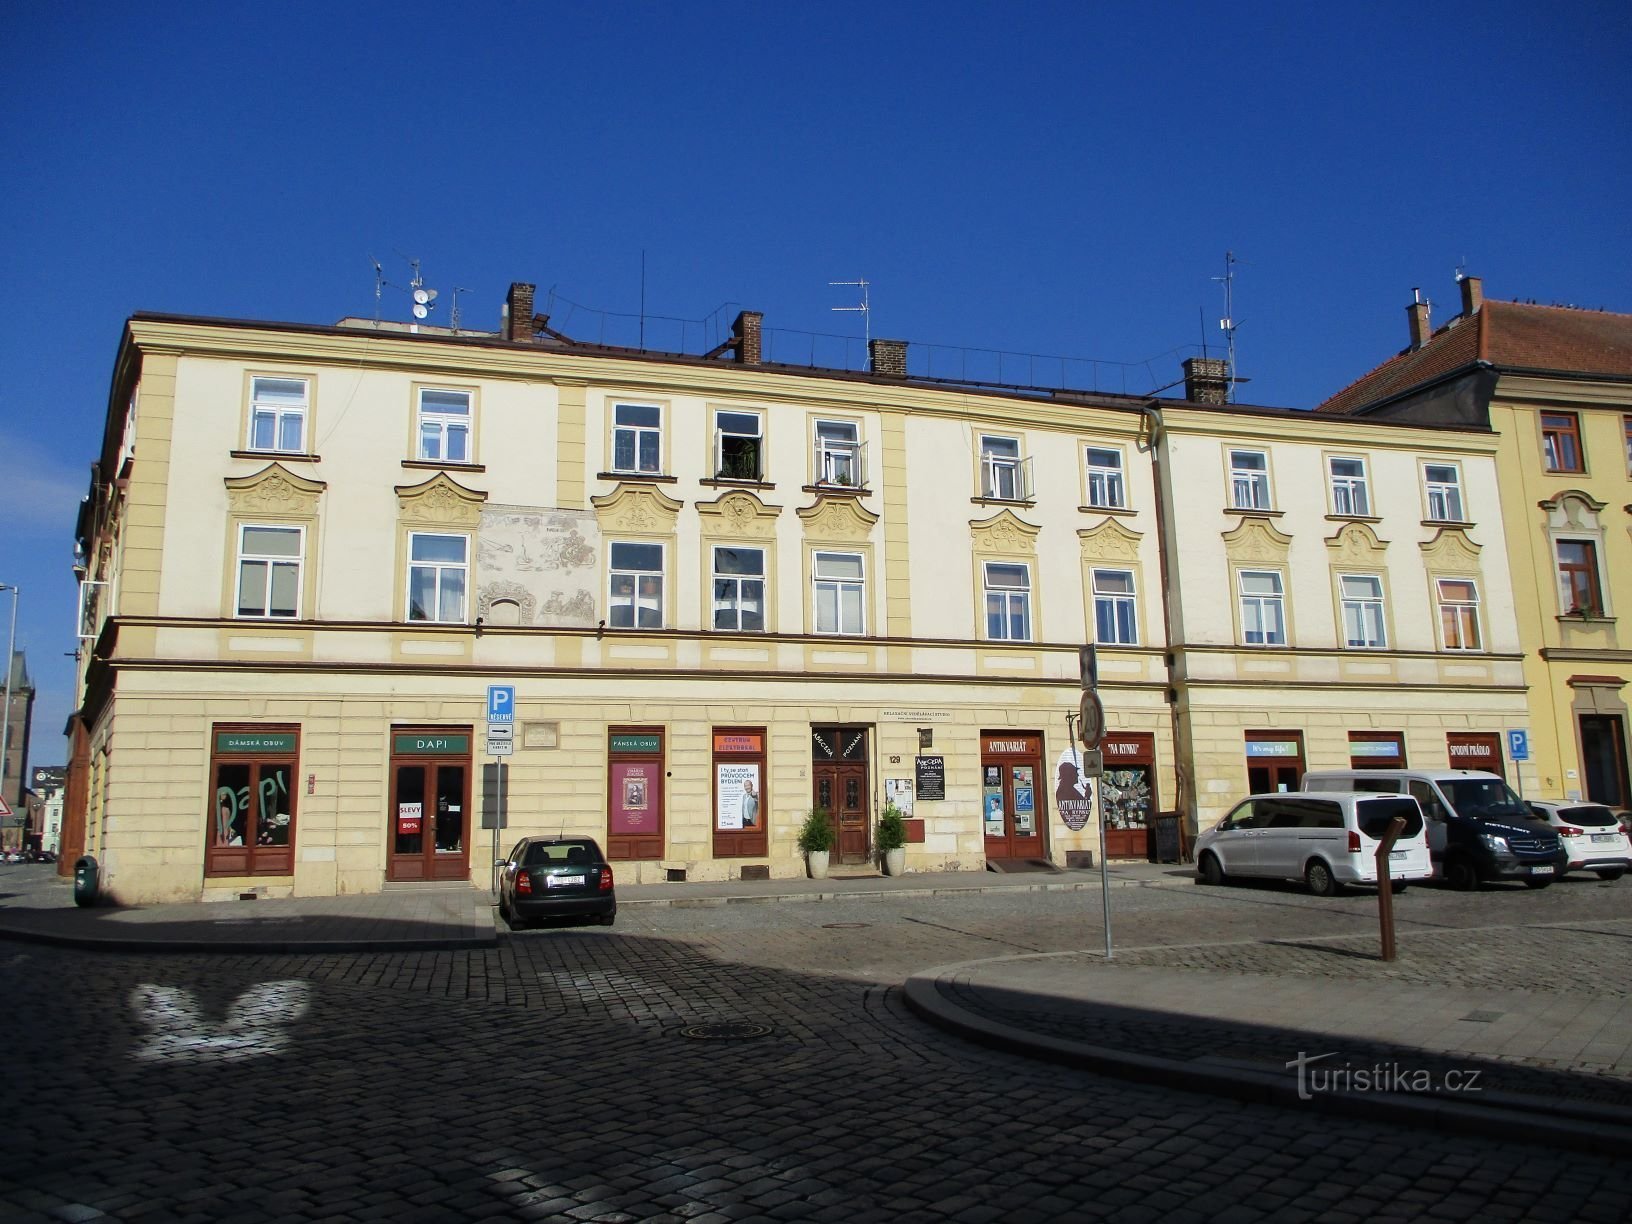 Malé náměstí no. 129 (Hradec Králové, 6.7.2019. huhtikuuta XNUMX)